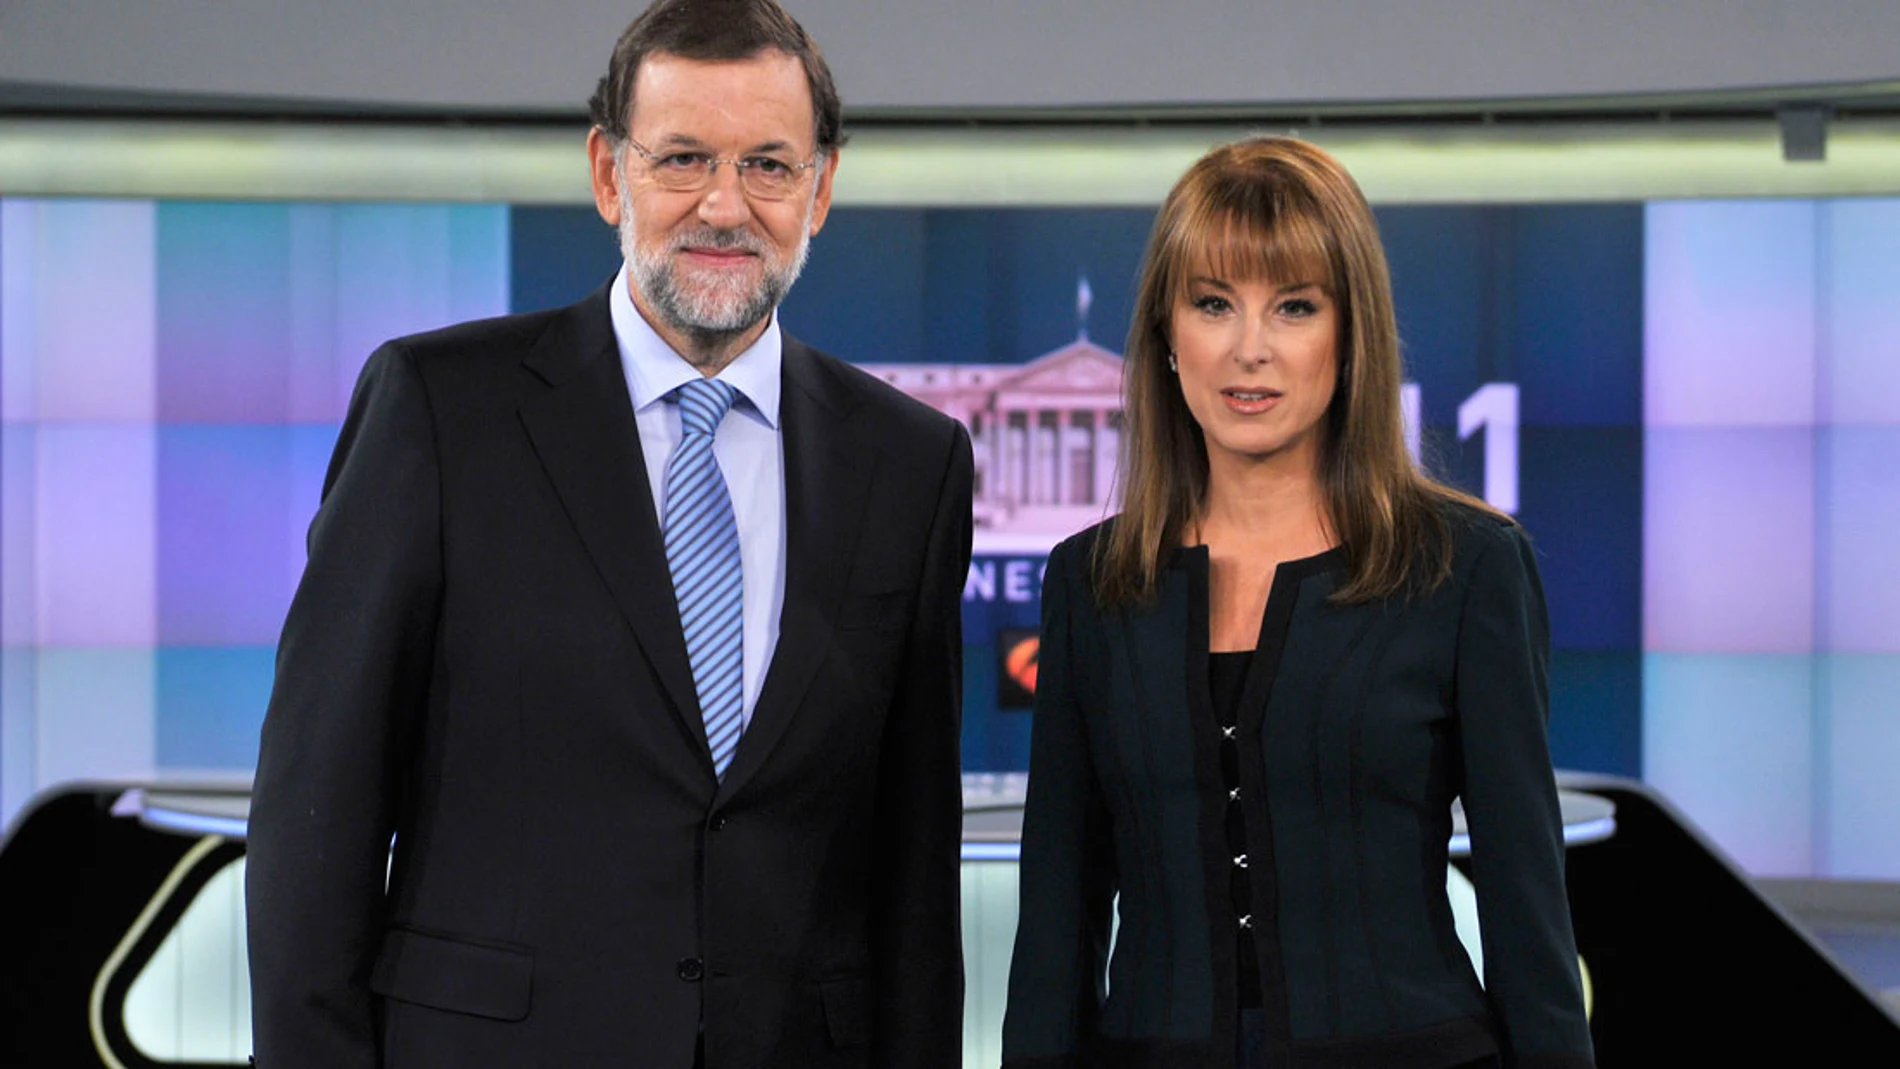 Mariano Rajoy junto a Gloria Lomana